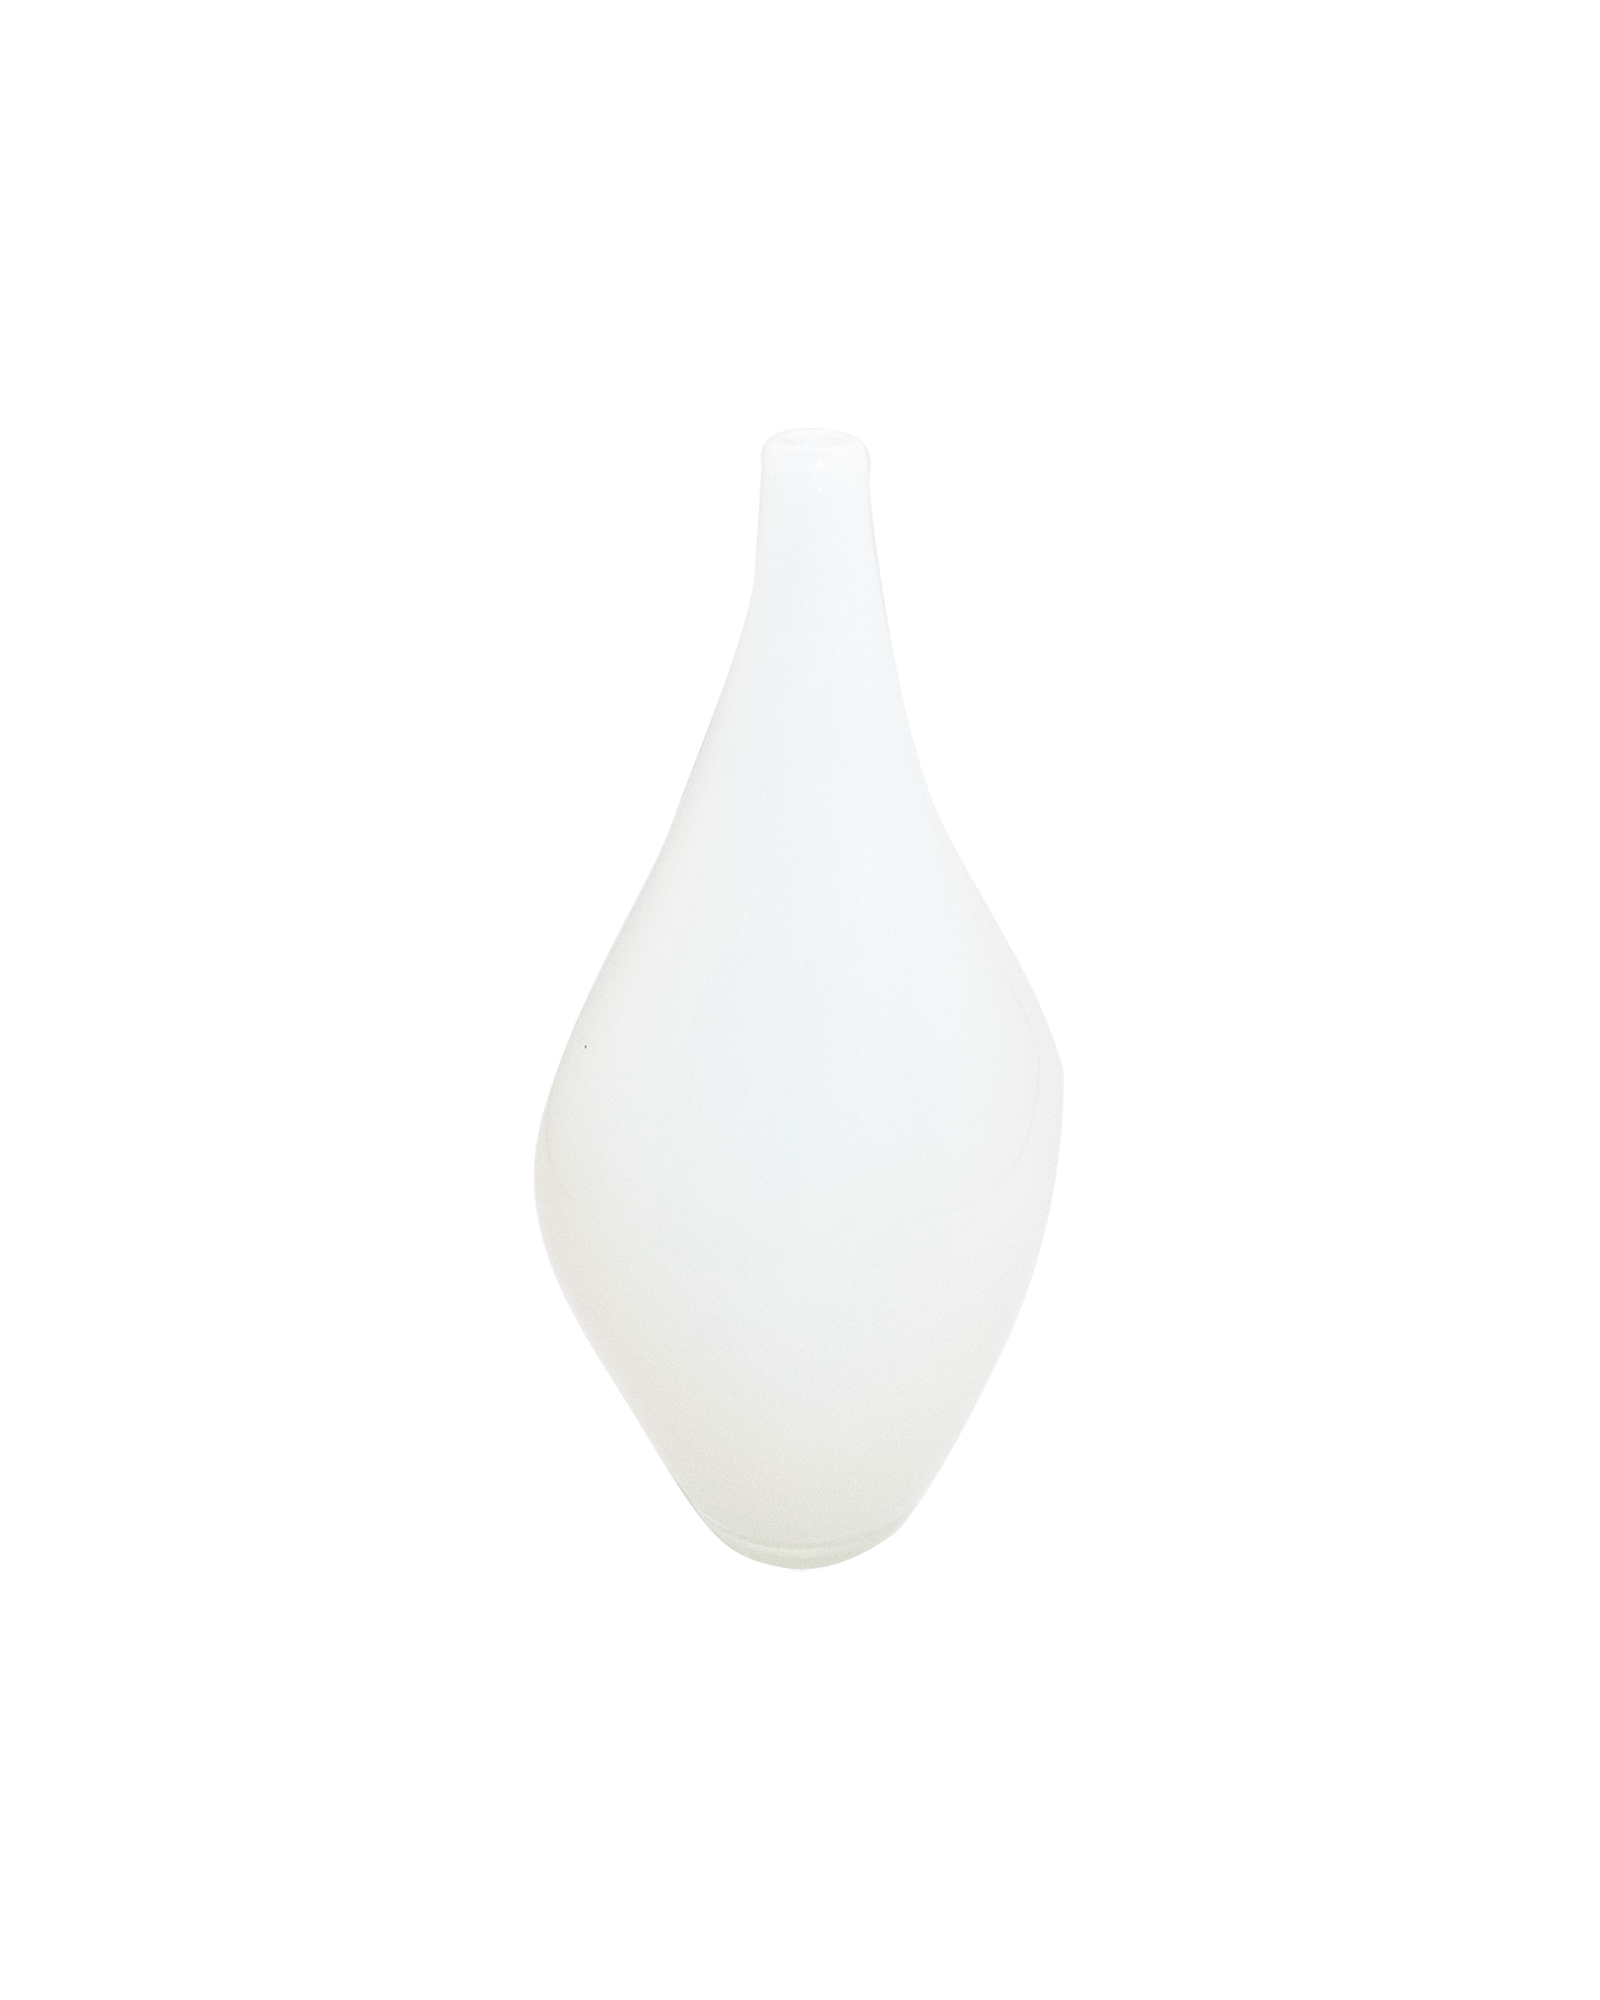 [RENTAL] White Opaline Teardrop Vase